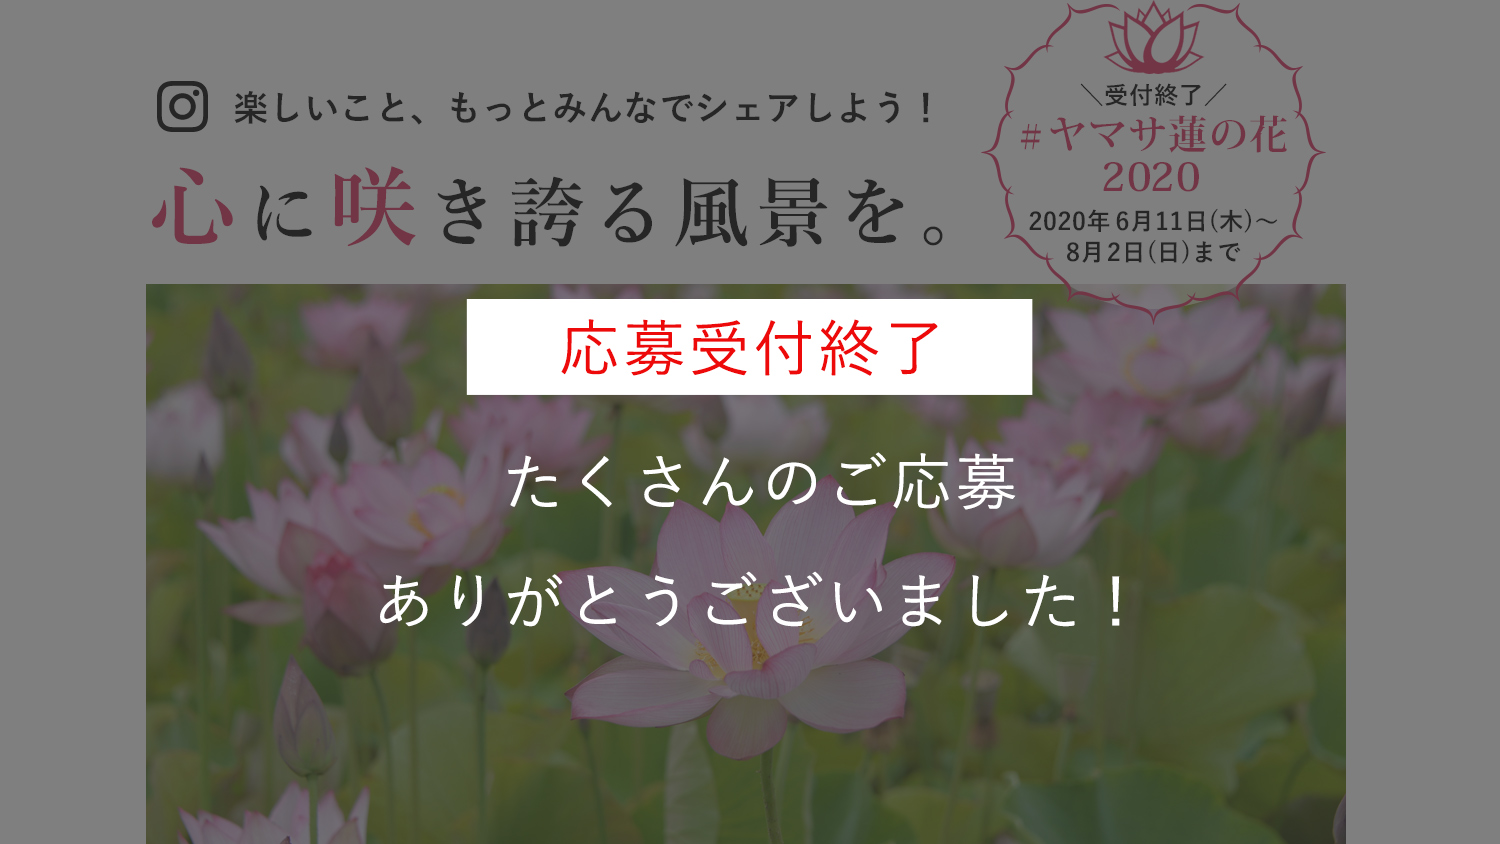 ヤマサ蓮の花 インスタグラムフォトコンテスト